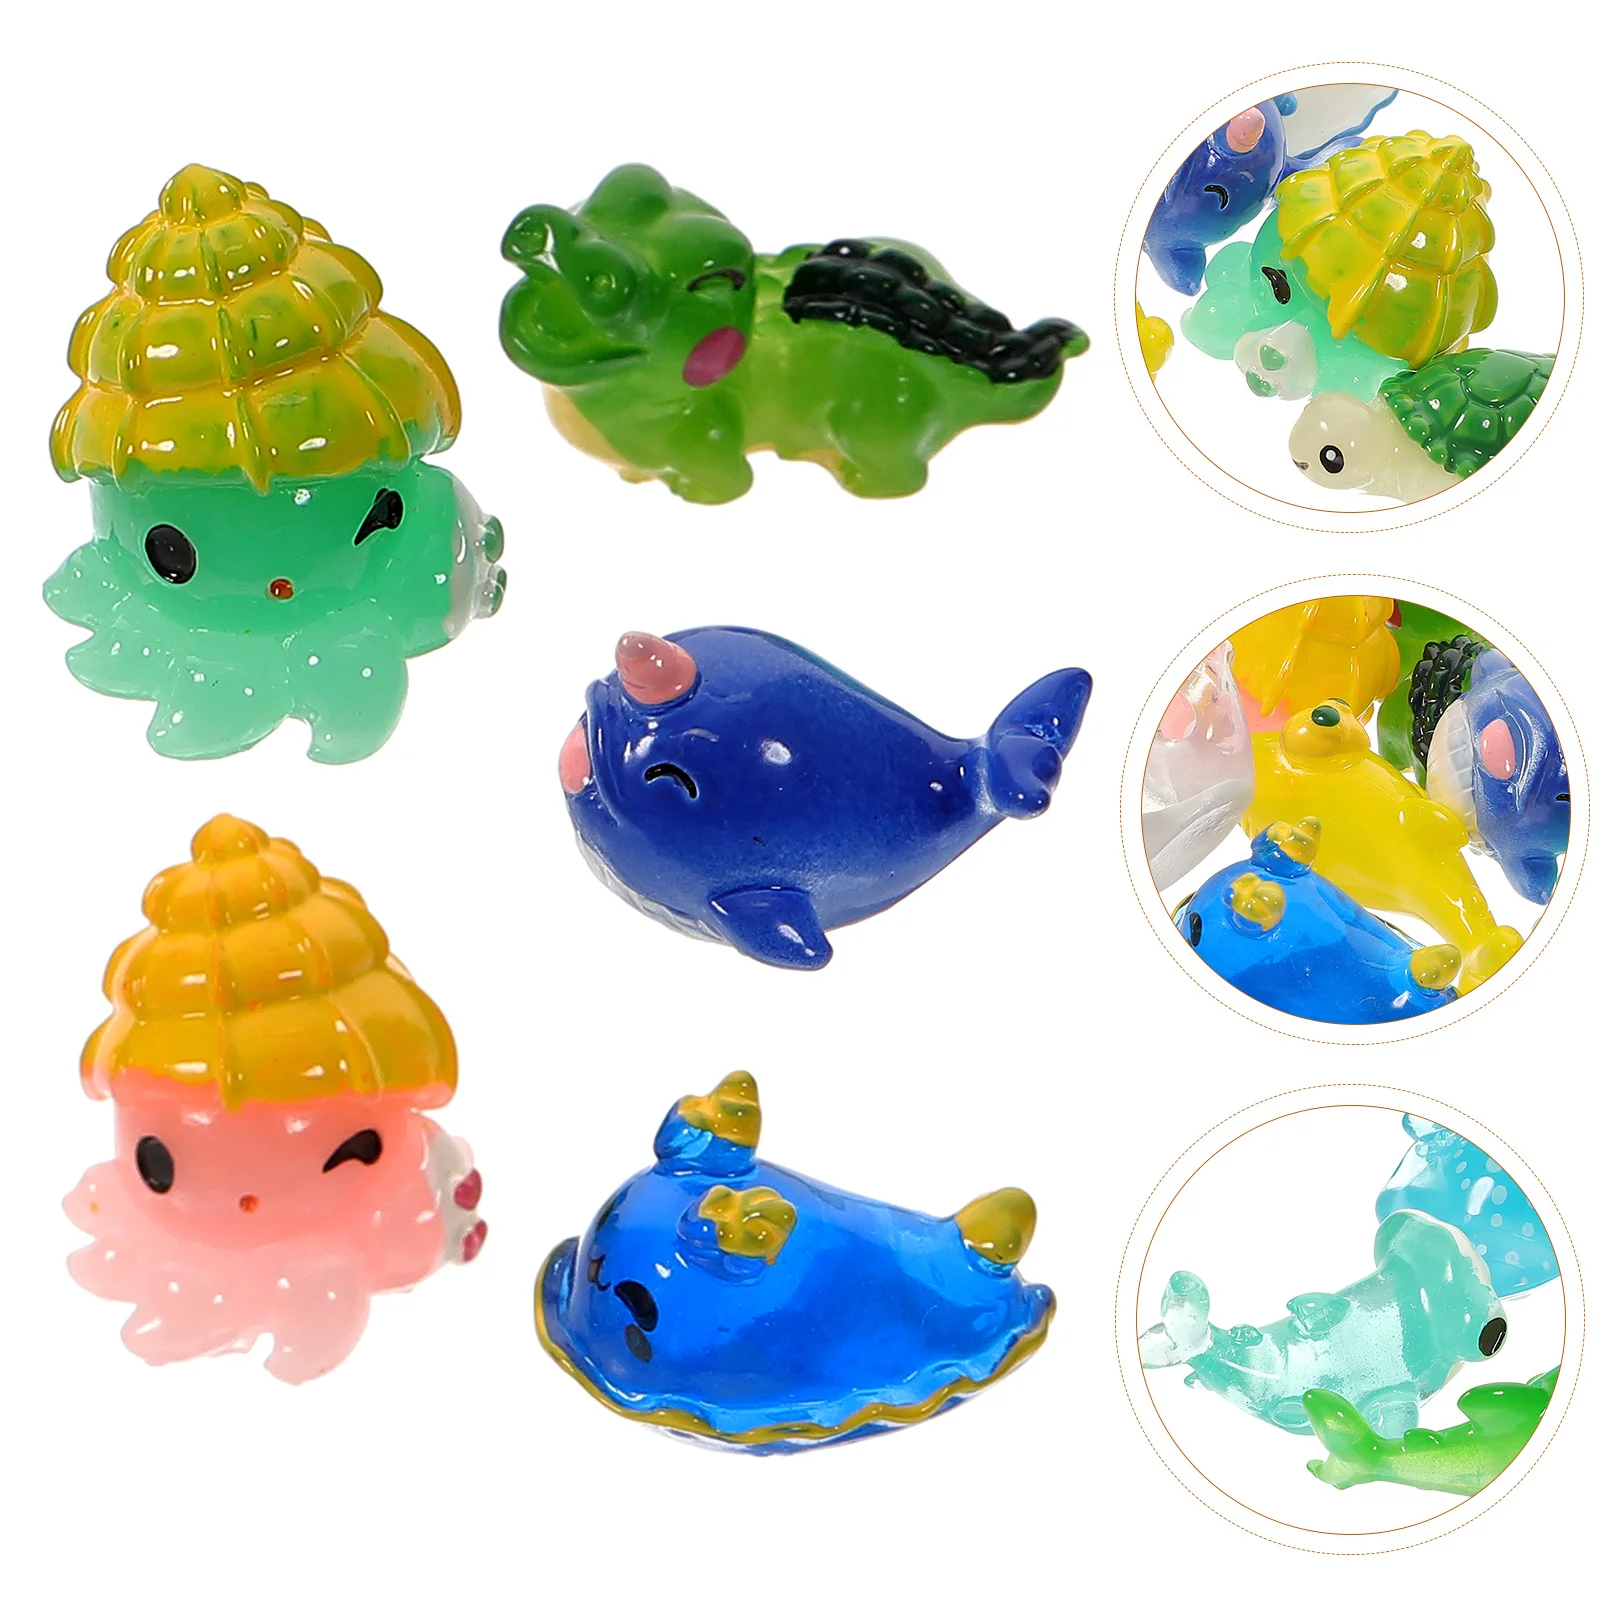 

15 Pcs Mini Animal Model Models Fish Tank Ornaments Resin Sea Animals Decorations Delicate Decors Ocean Small Adornments